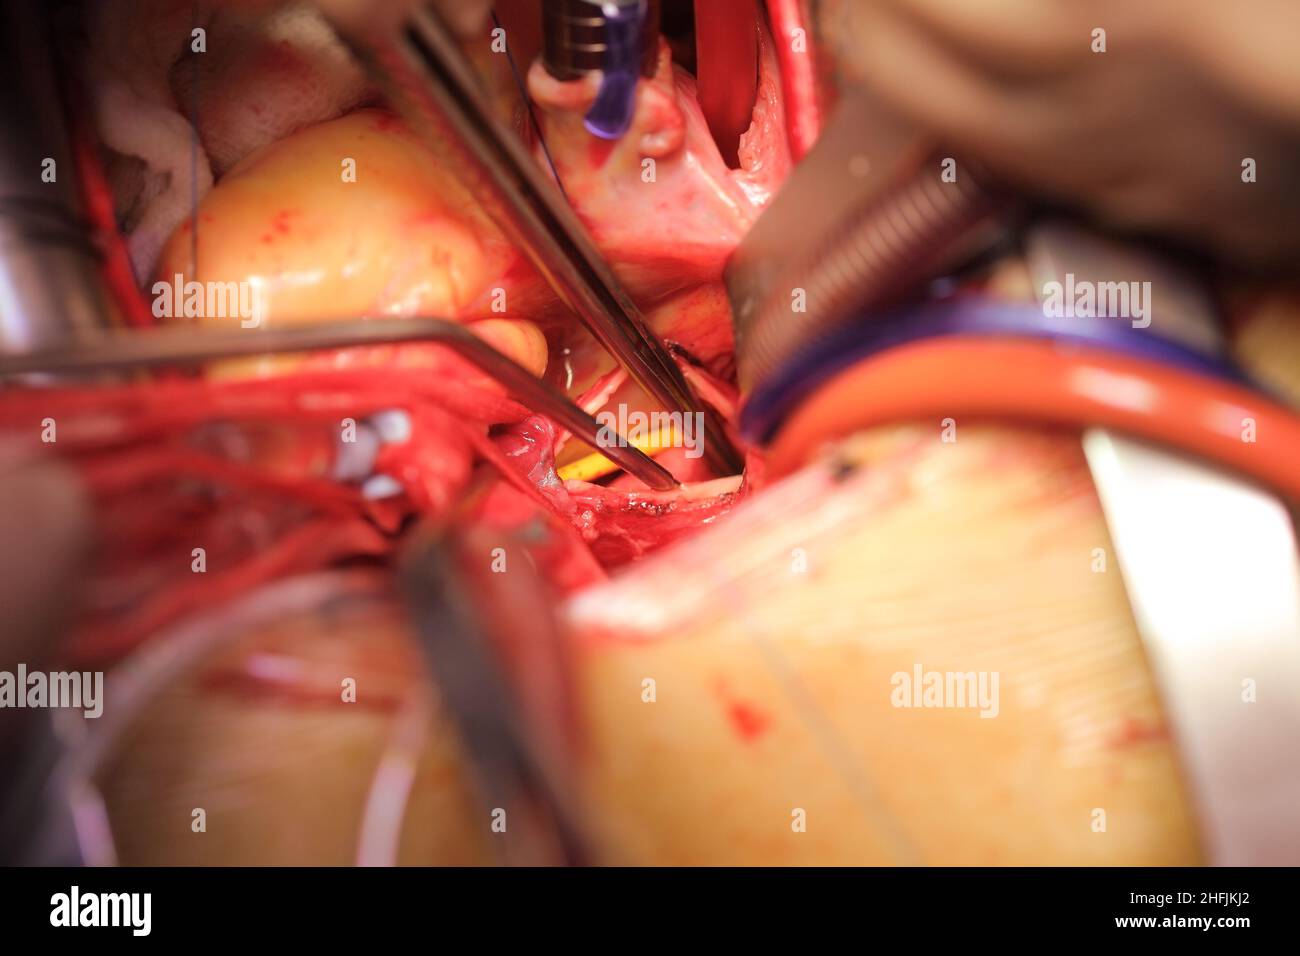 Offenes Herz mit Drainagerohren und Instrumenten in Nahaufnahme während der Operation. Stockfoto